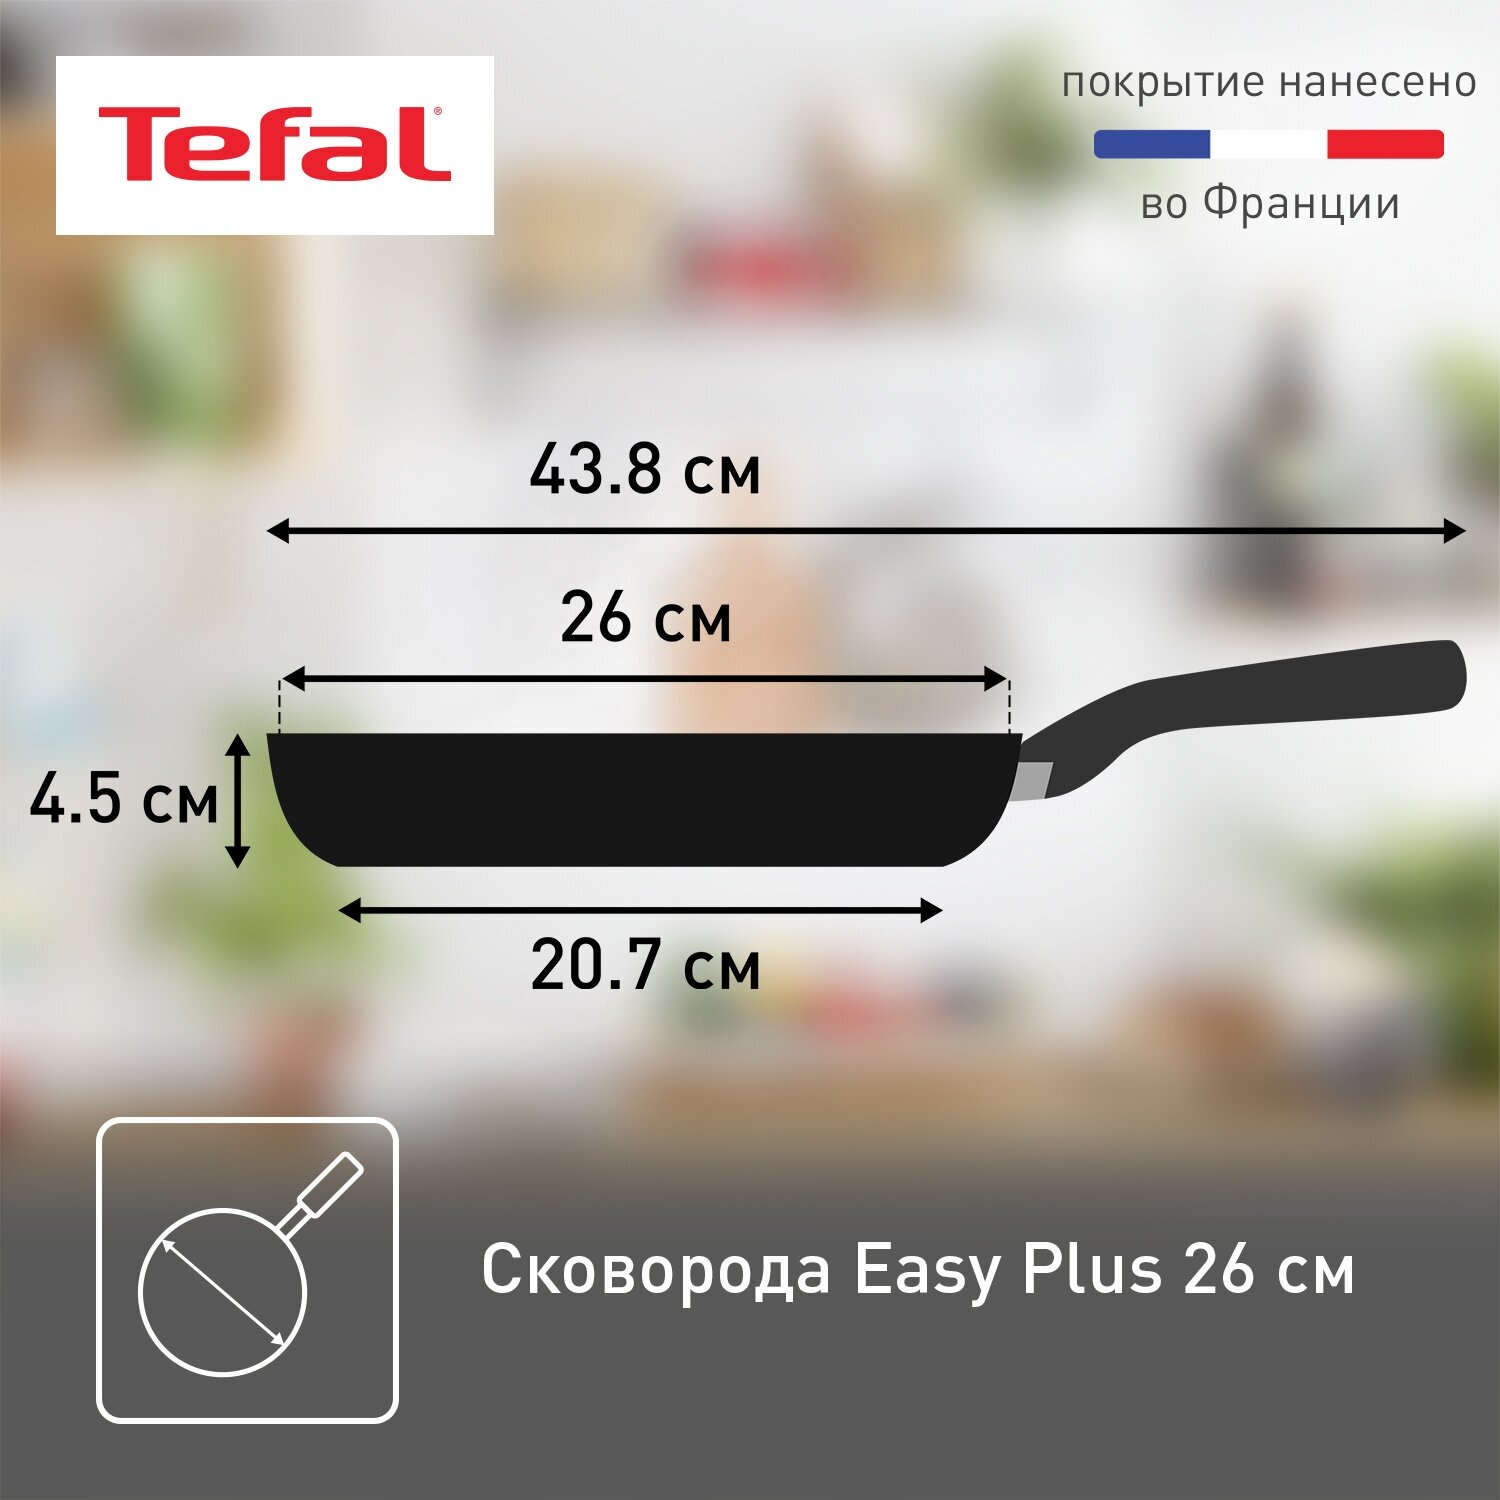 Сковорода Tefal Easy Plus 04237126, диаметр 26 см, с индикатором температуры, с антипригарным покрытием, для газовых, электрических плит